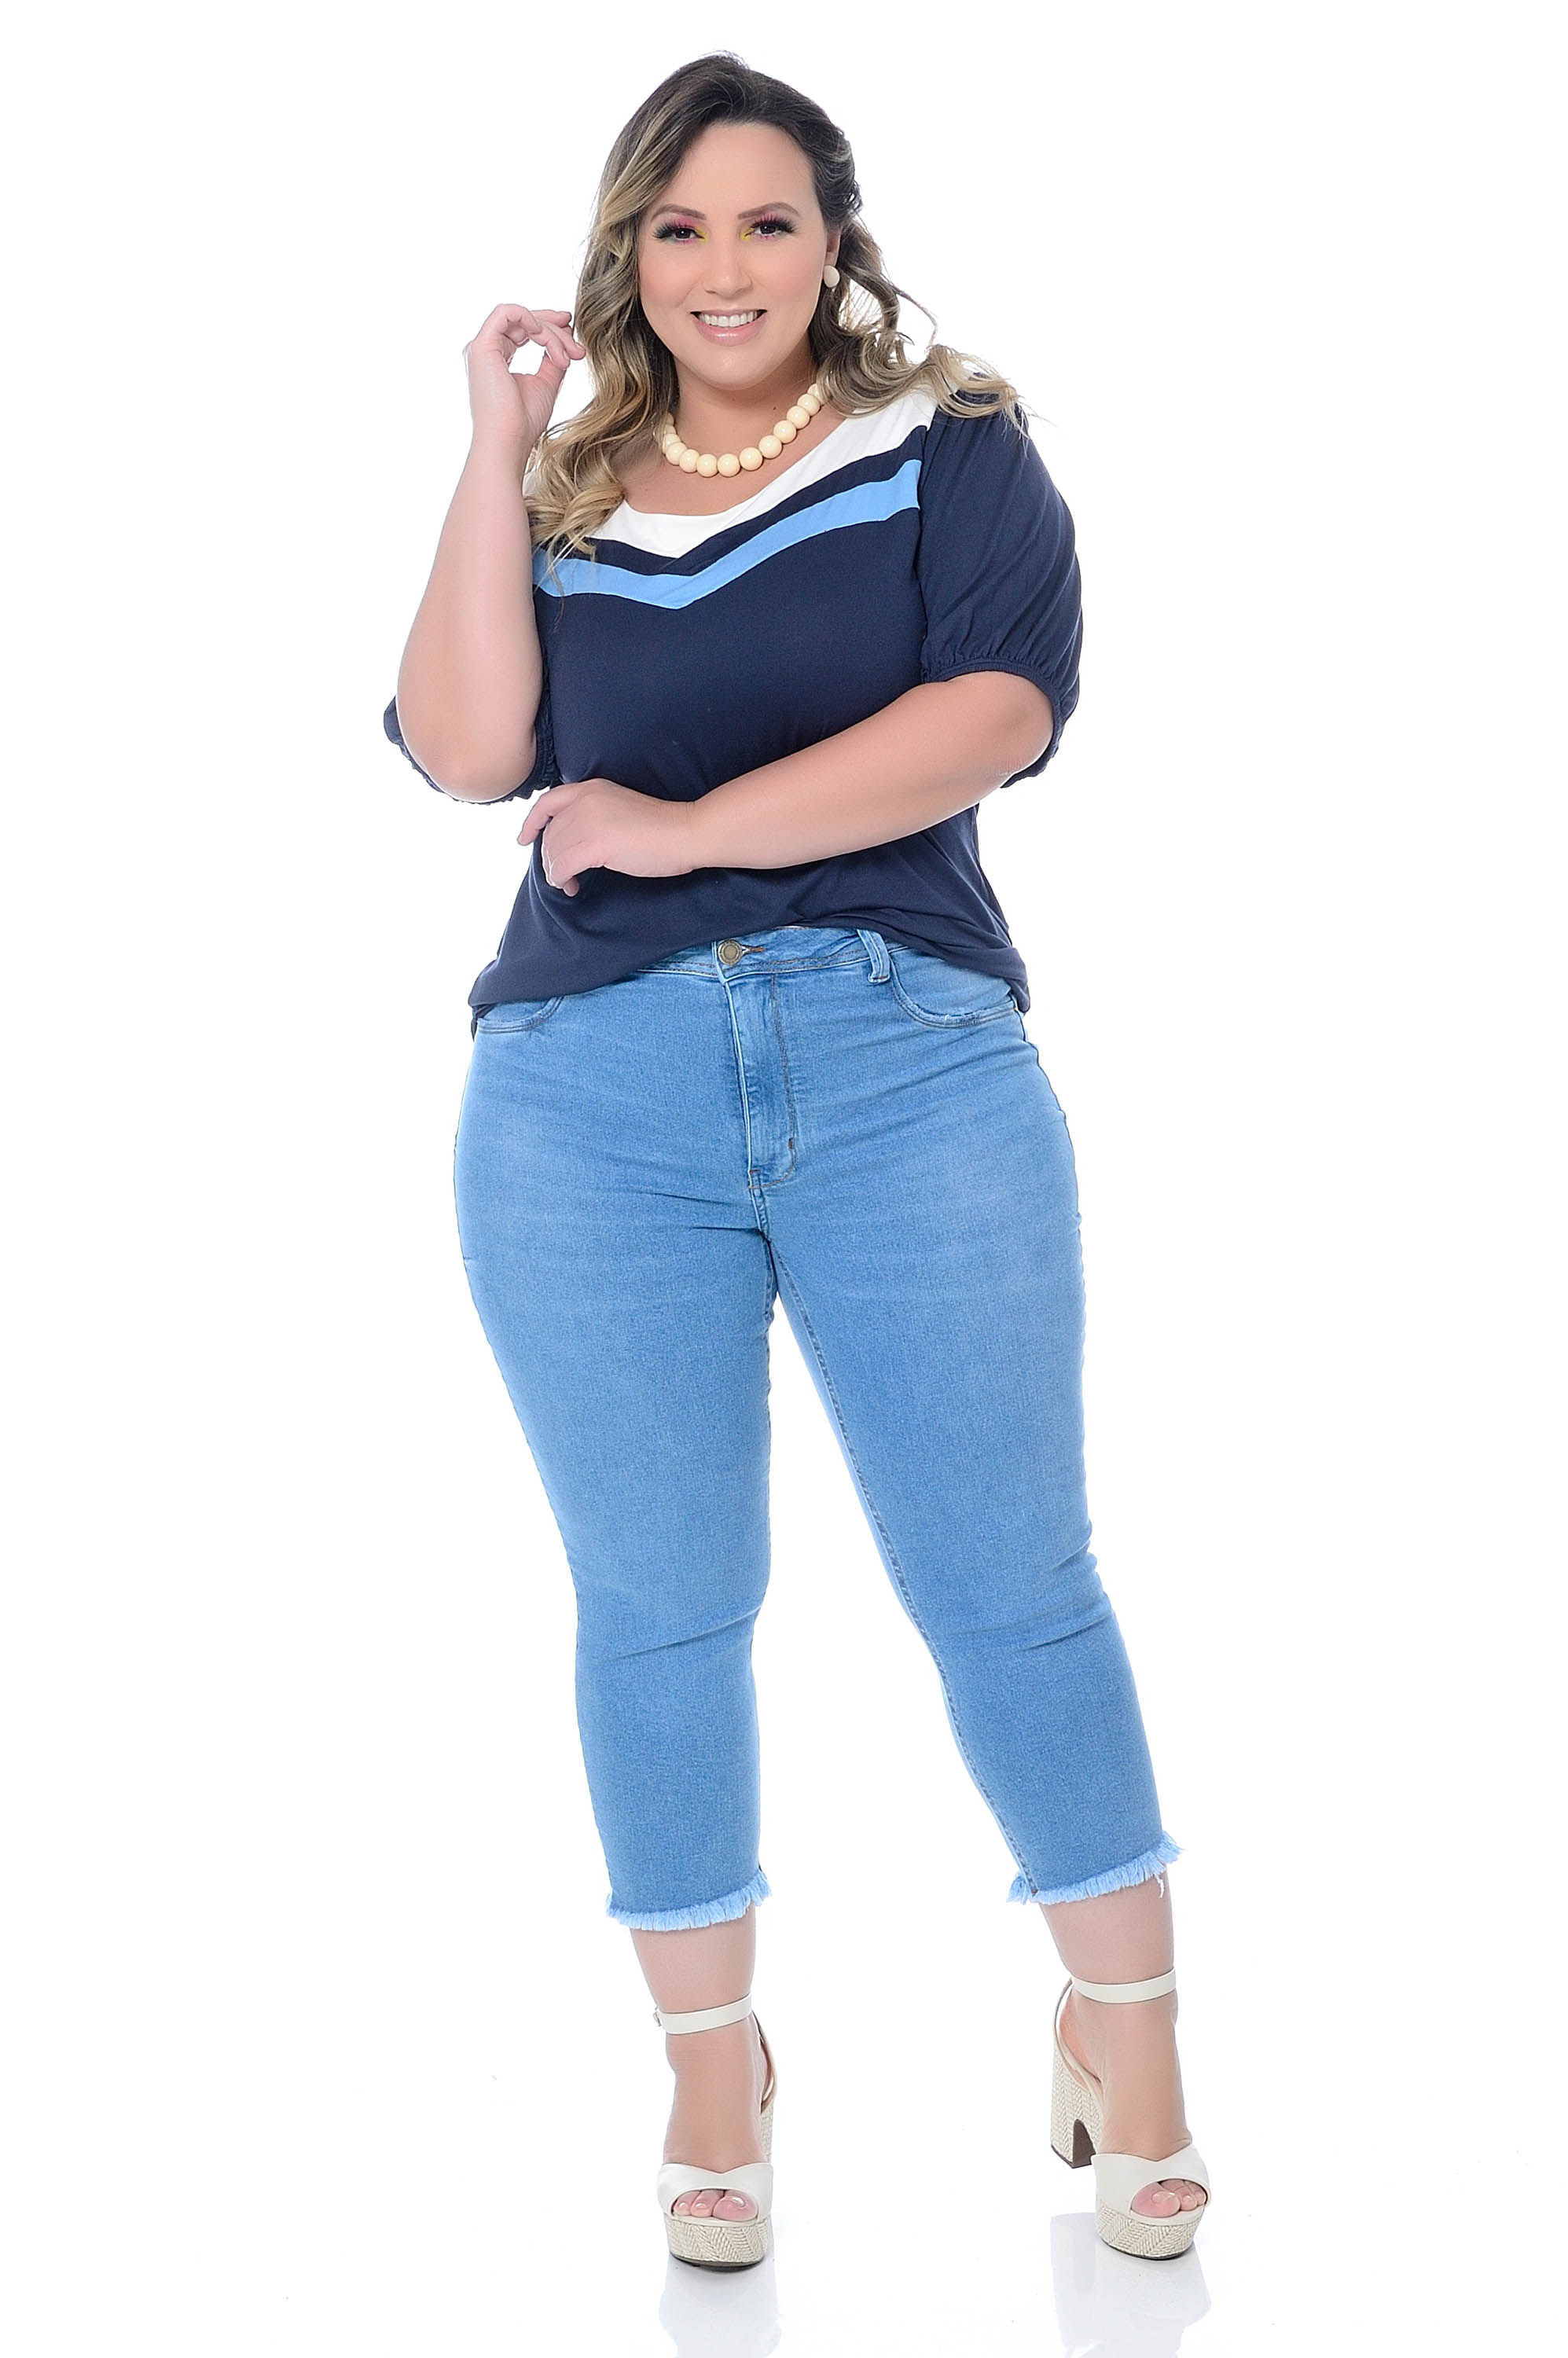 Calça Capri Jeans em Algodão com Elastano Plus Size - daluzplussize